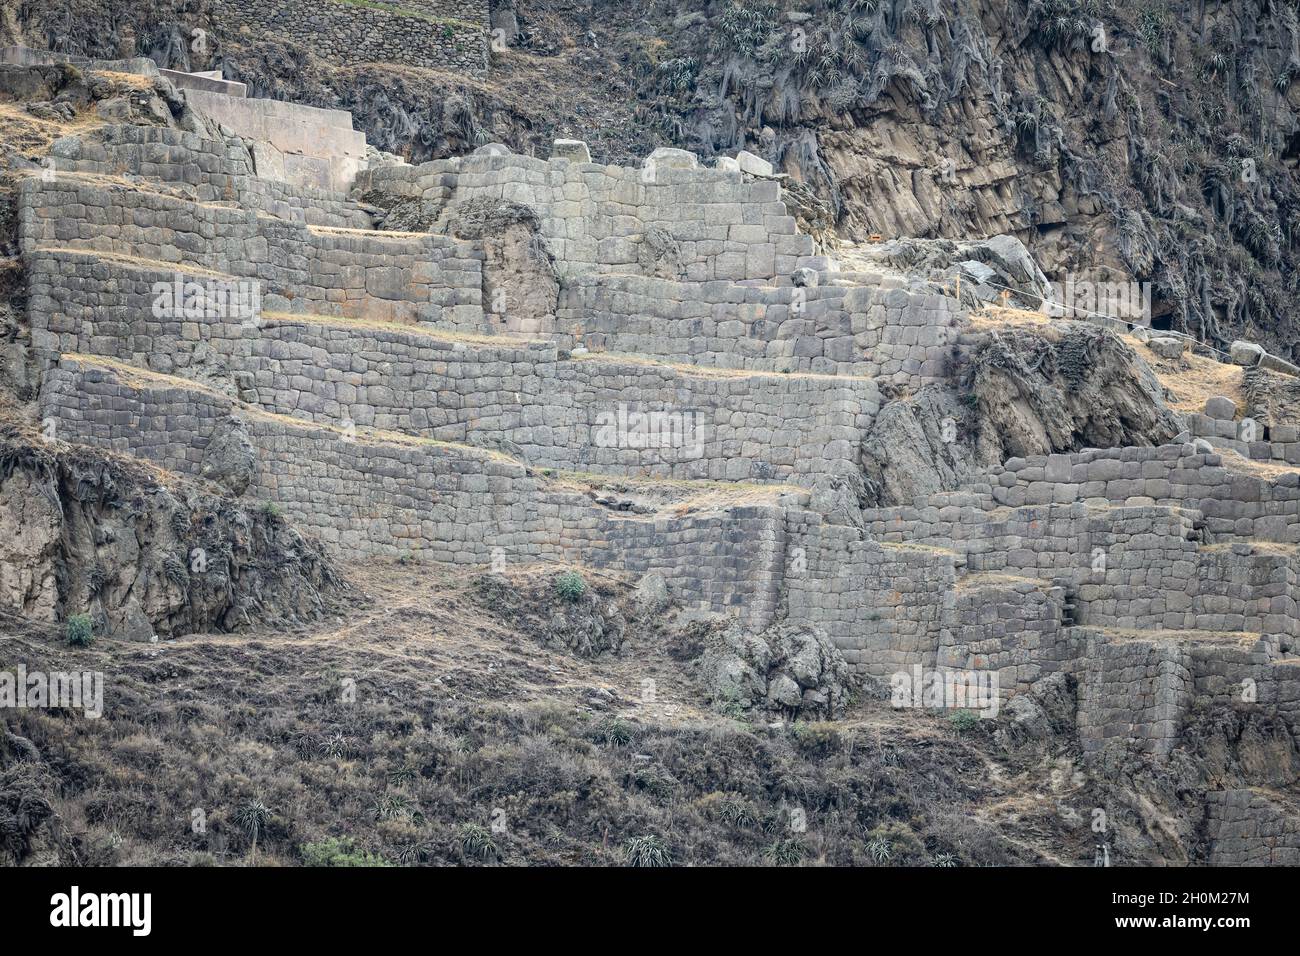 Murs de pierre de la ruine inca près de Ollantaytambo, Cuzco, Pérou.Amérique du Sud. Banque D'Images